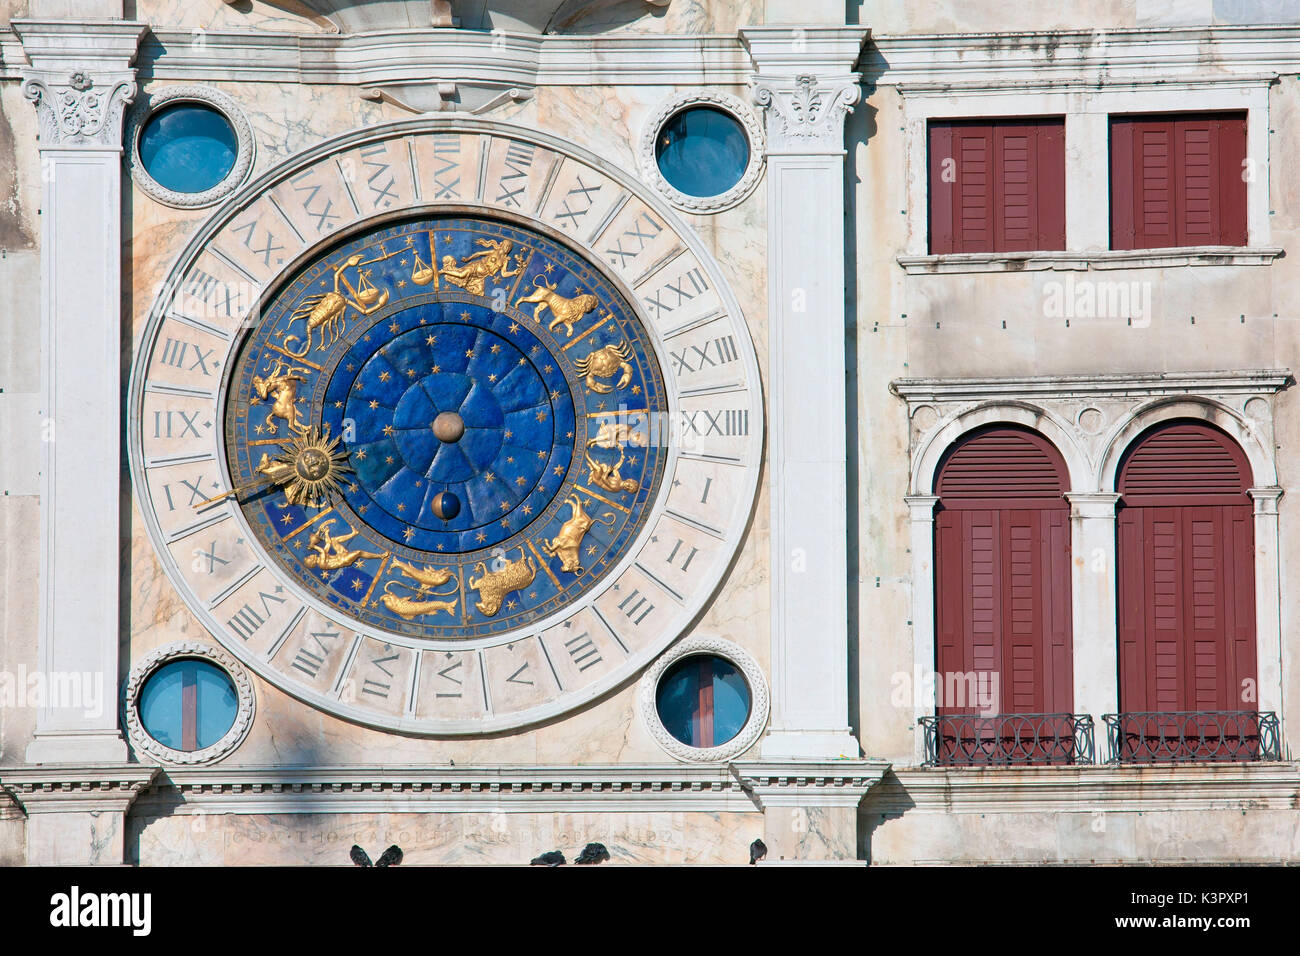 Ein Detail der berühmten Uhrenturm, einer der bedeutendsten Renaissance Gebäude in Venedig, Venetien Italien Europa Stockfoto